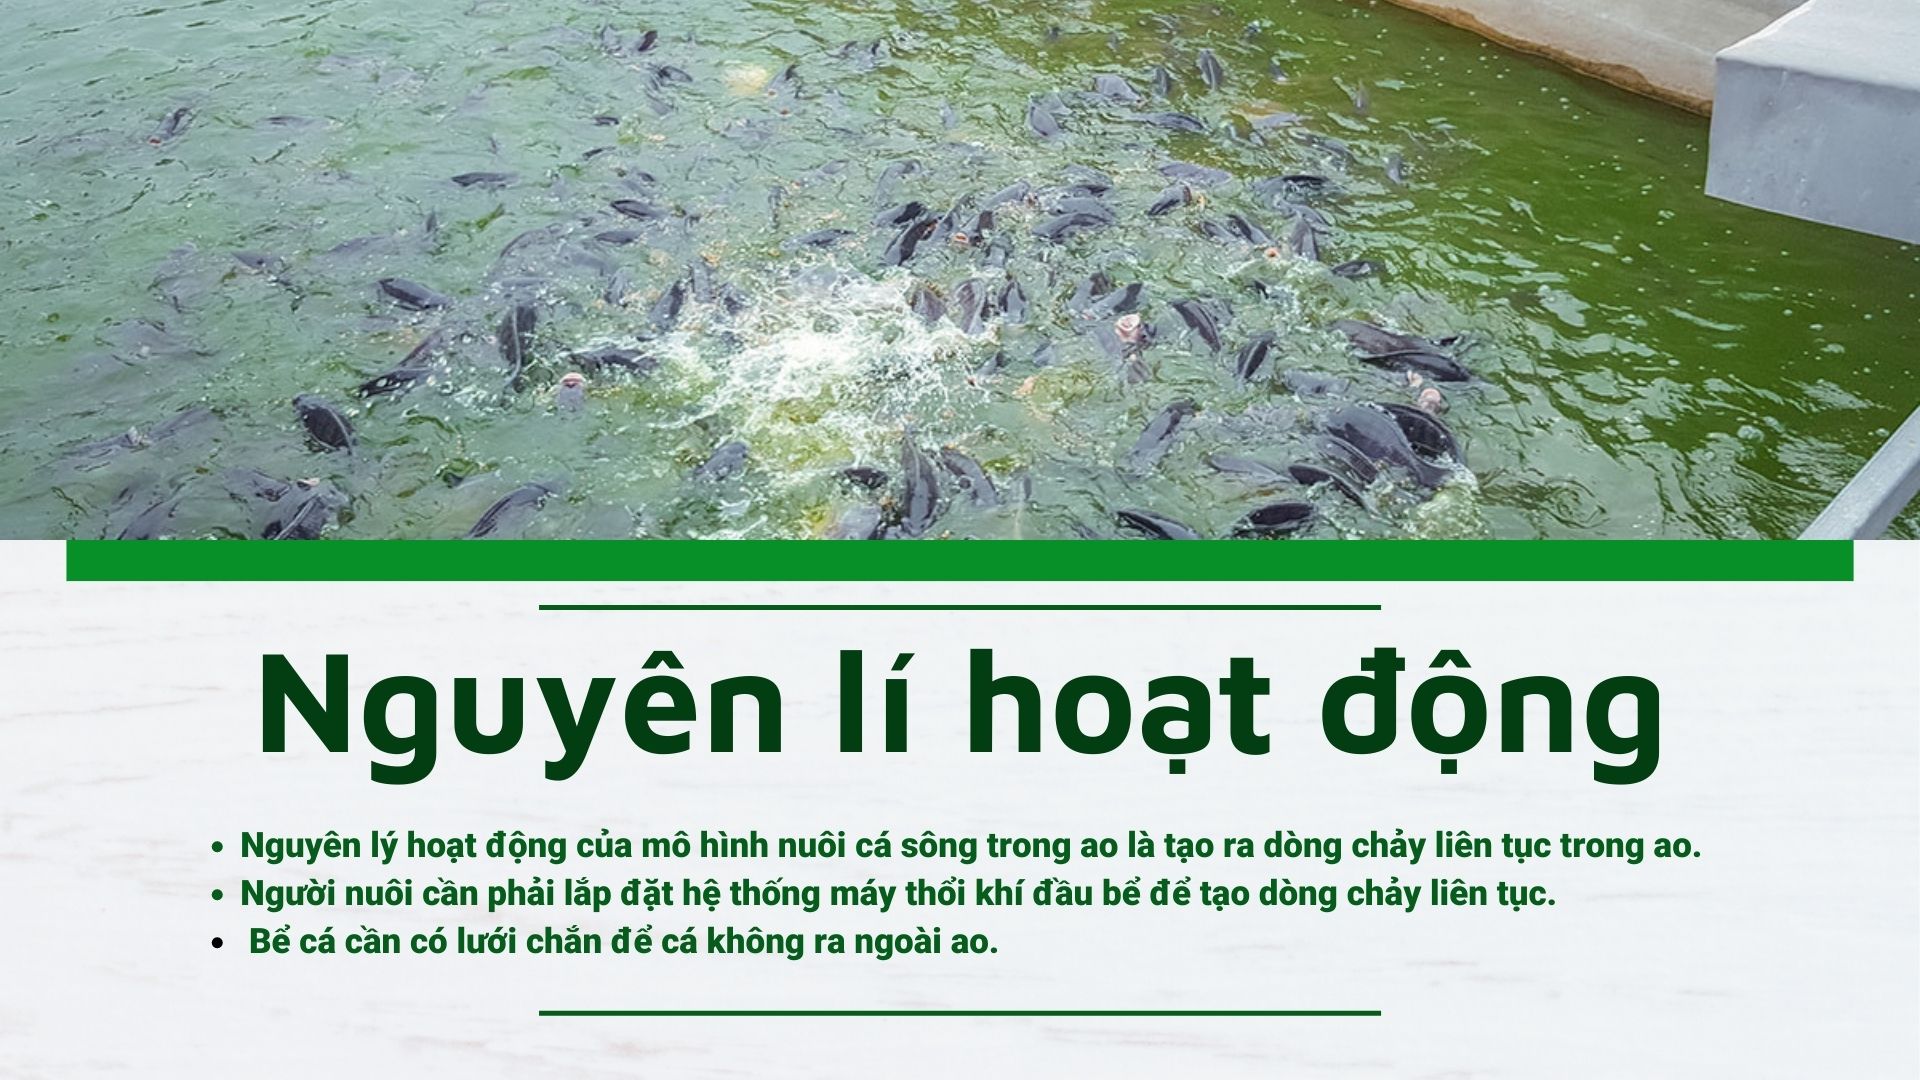 SỔ TAY NHÀ NÔNG Tìm hiểu kỹ thuật nuôi cá sông trong ao đạt hiệu quả cao   Dân Việt